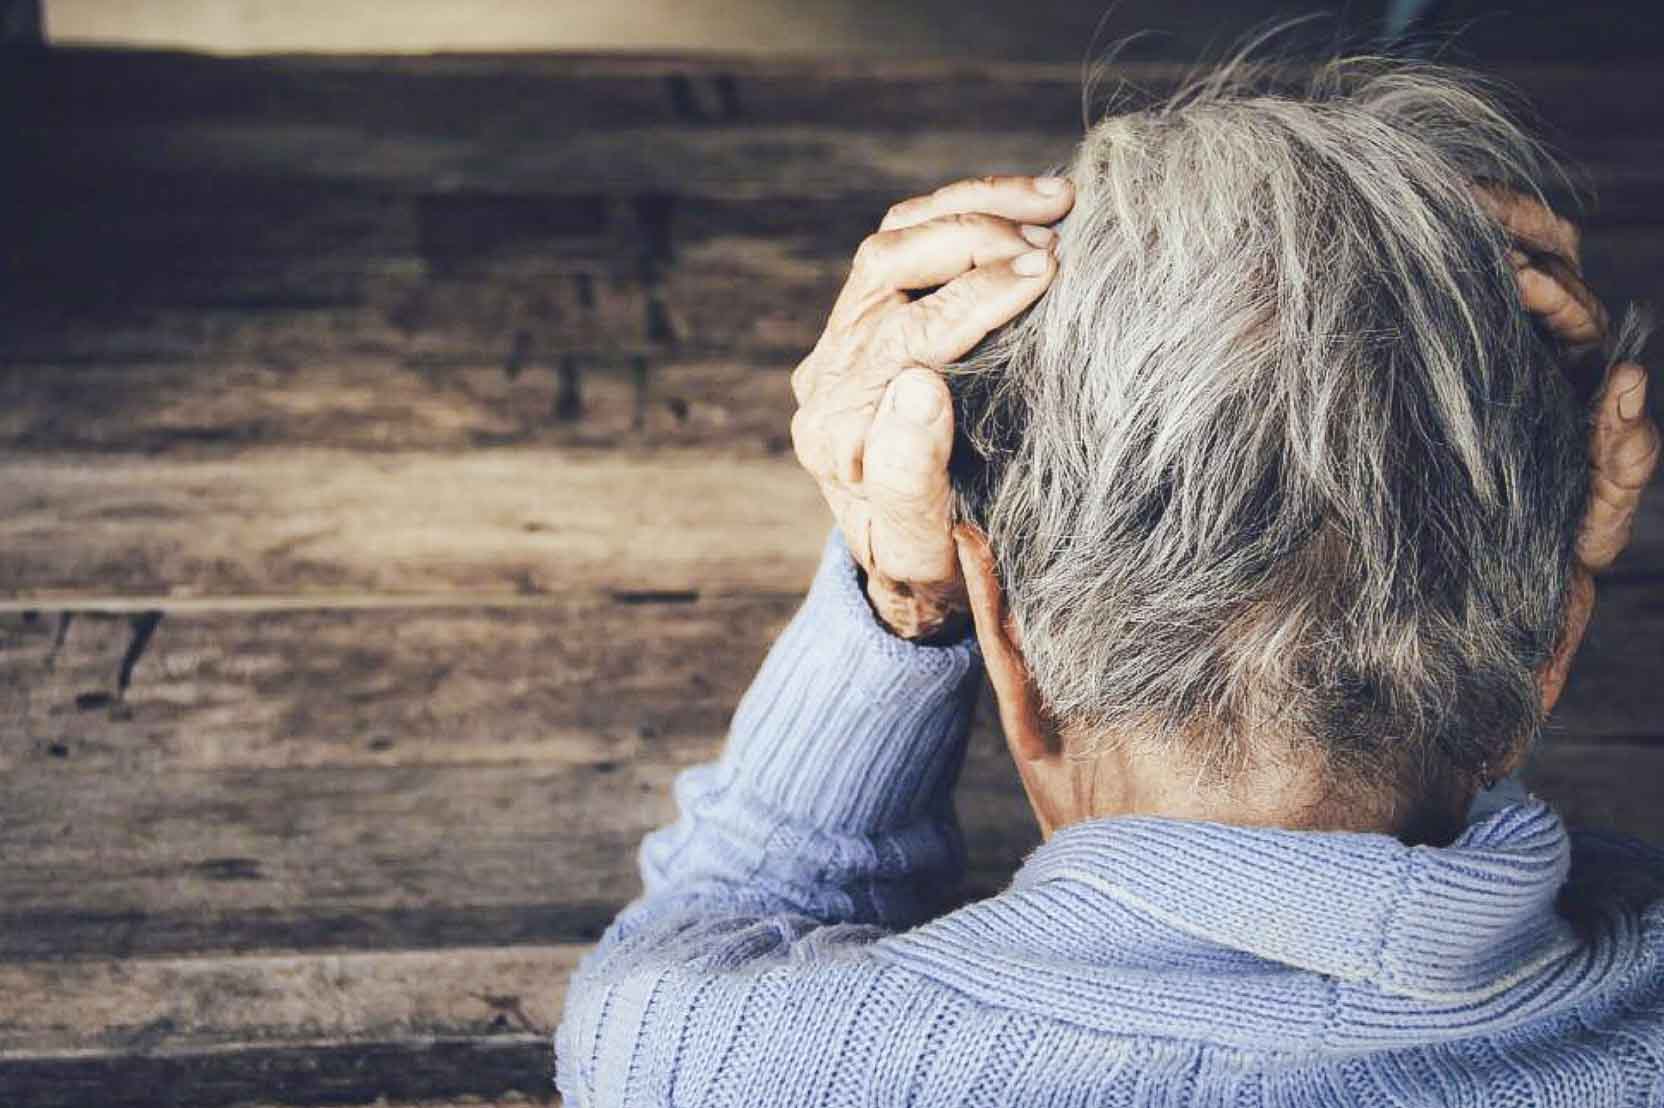 El TSJCV niega la aplicación de la eutanasia a una enferma de Alzheimer solicitada por sus hijas